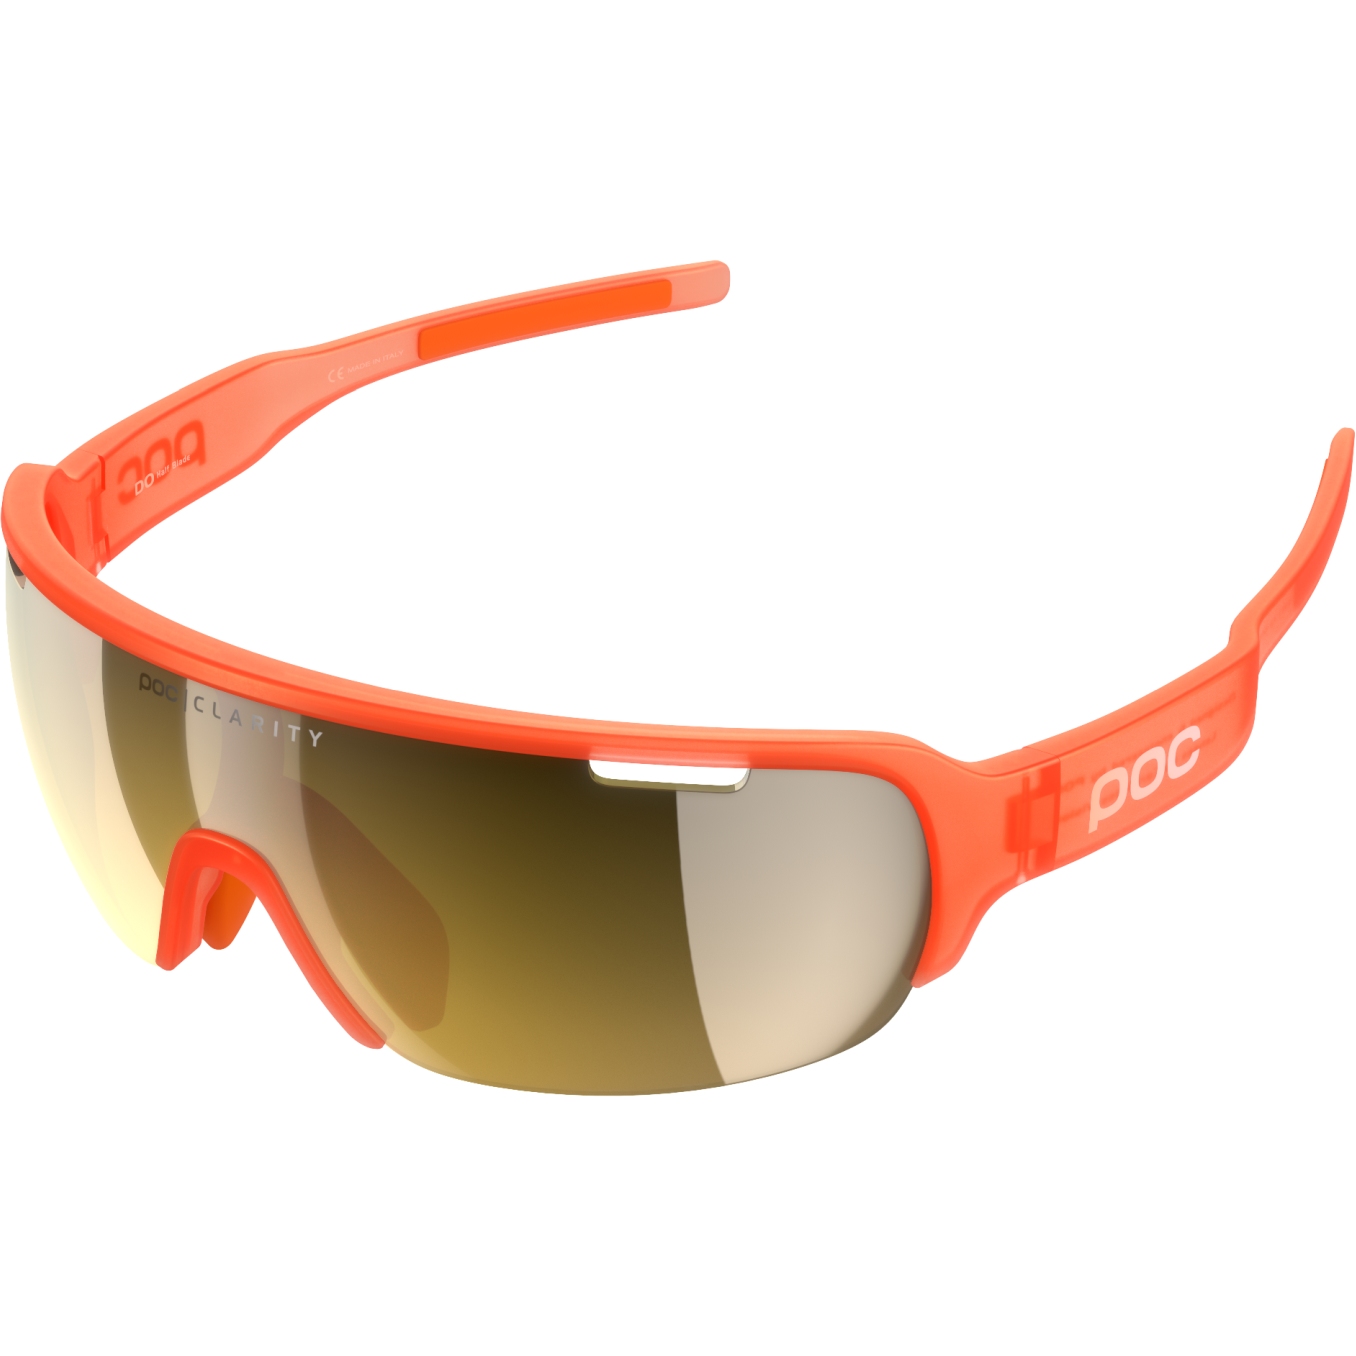 Productfoto van POC DO Half Blade Glasses - Mirror Lens - 1230 Fluorescent Orange Translucent / Violet/Gold